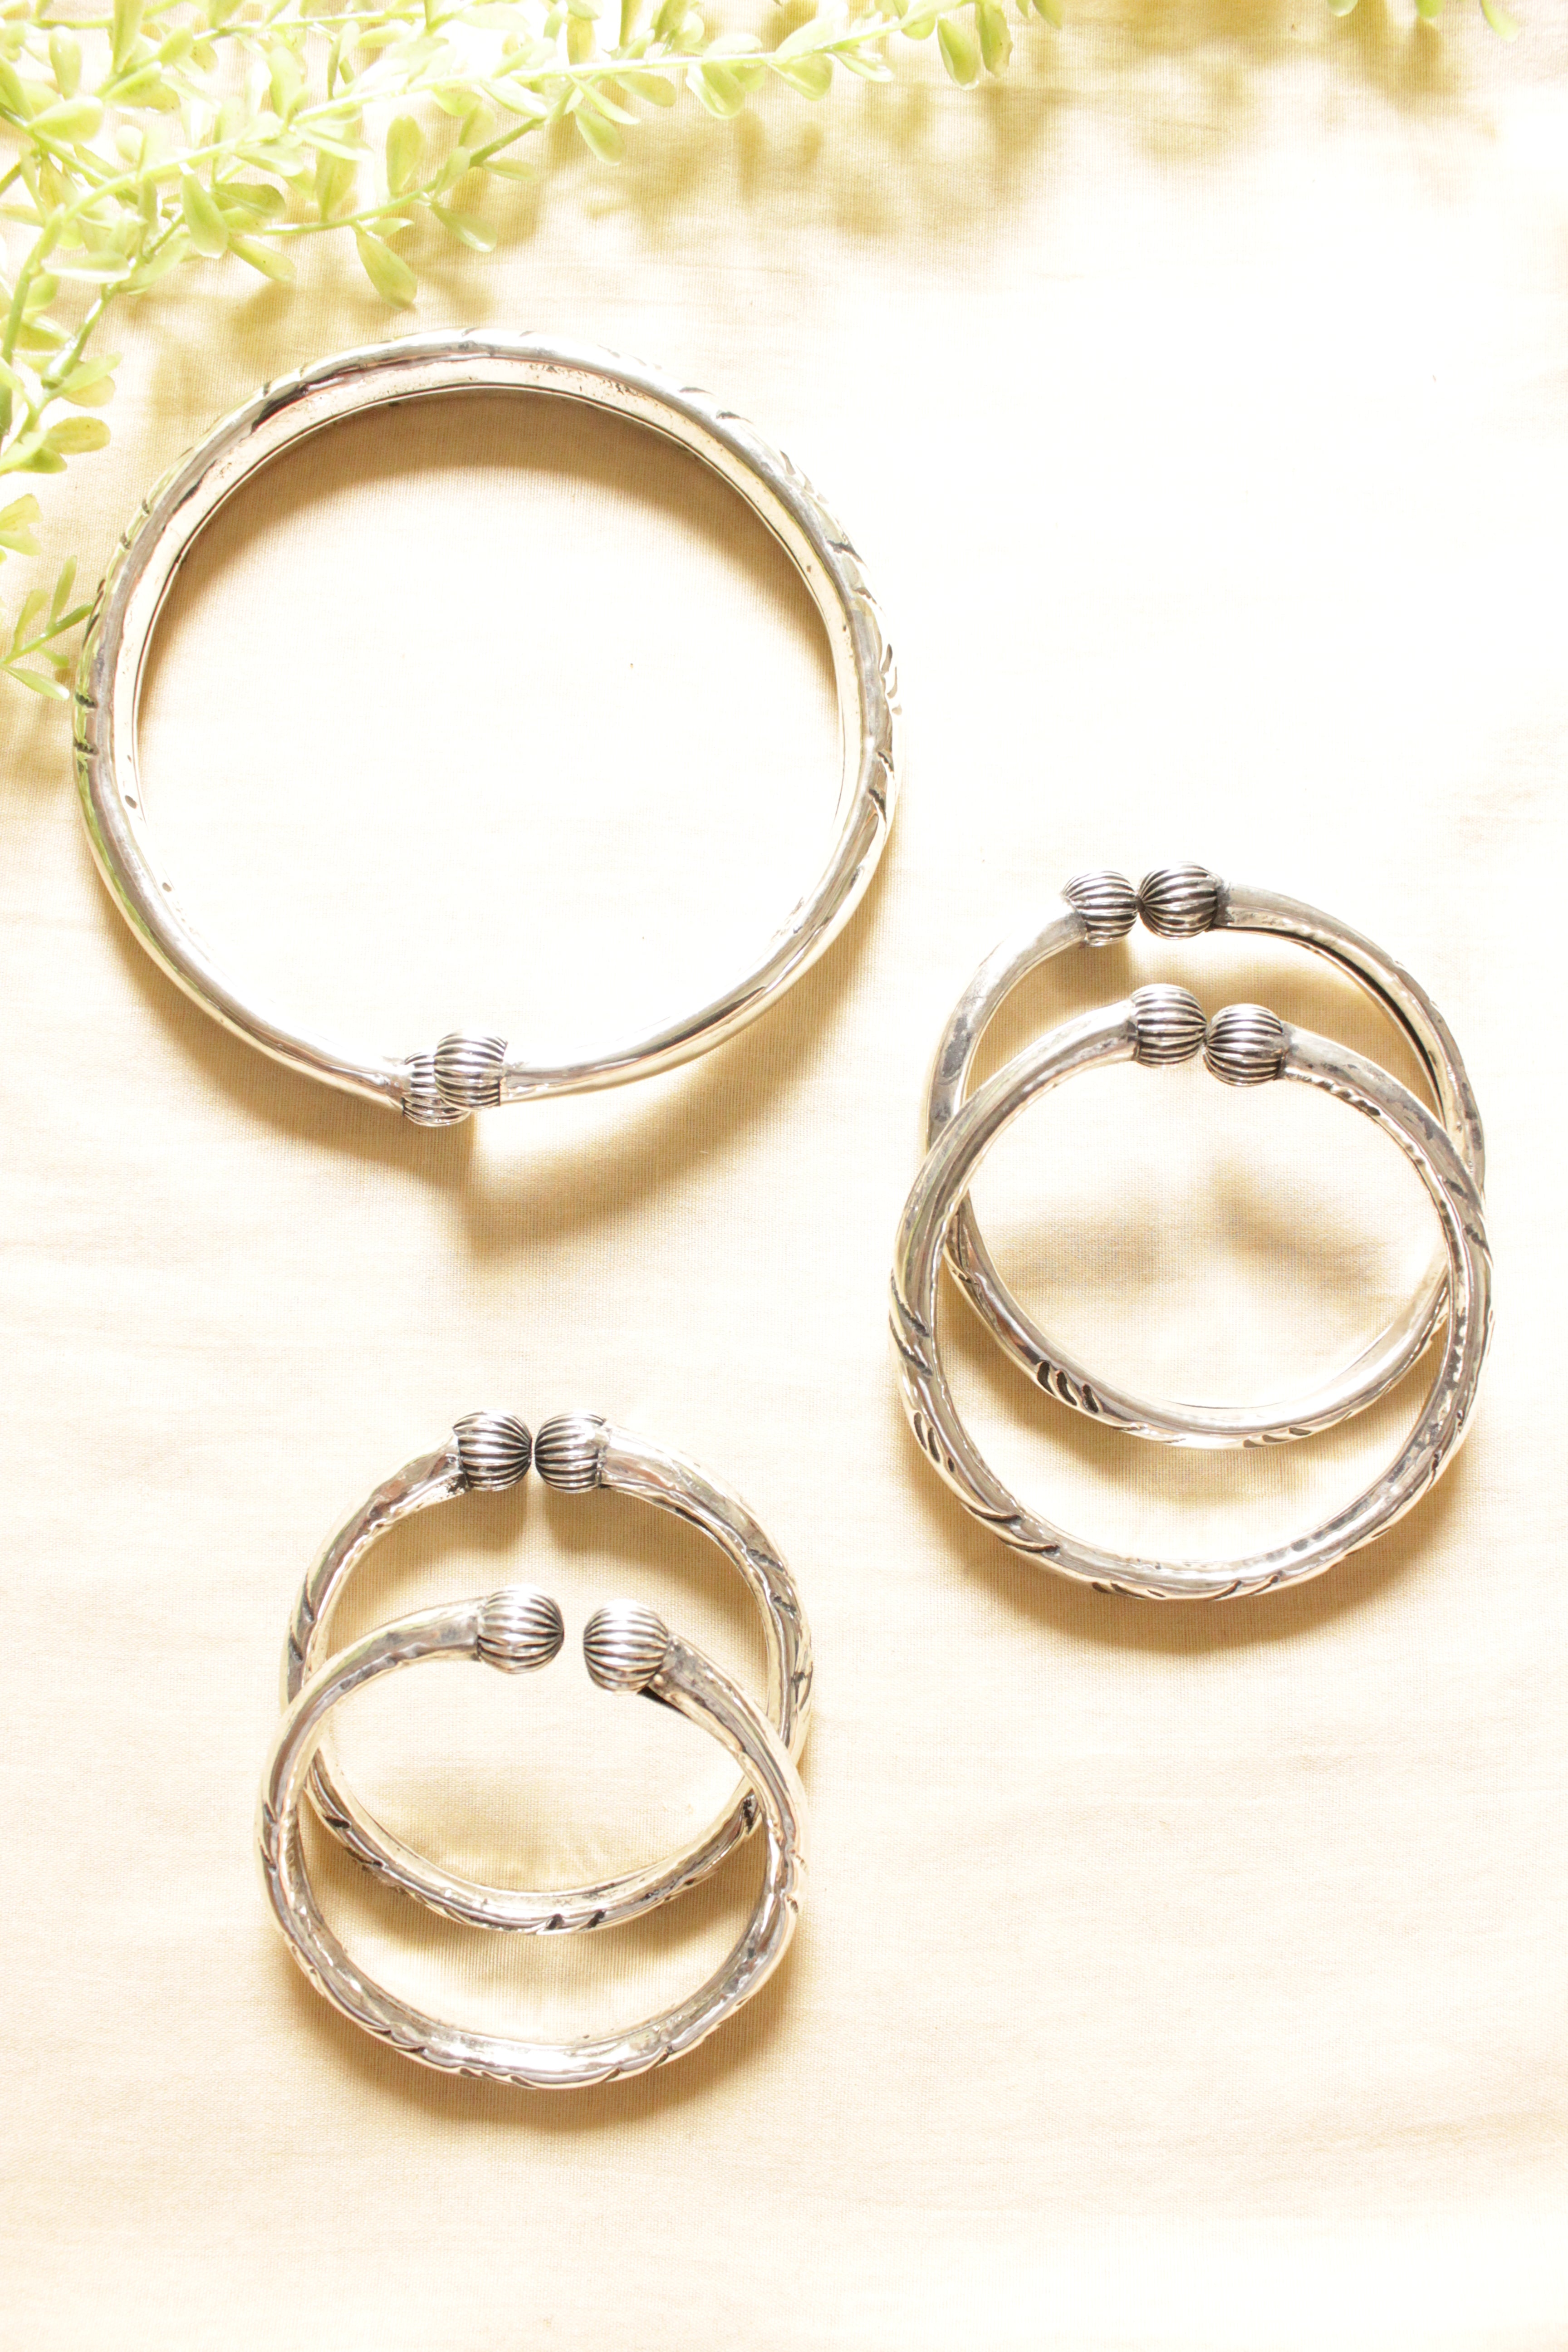 Set of 3 - Engraved Silver Hasli Necklace, 2 Bracelets and 2 Anklets